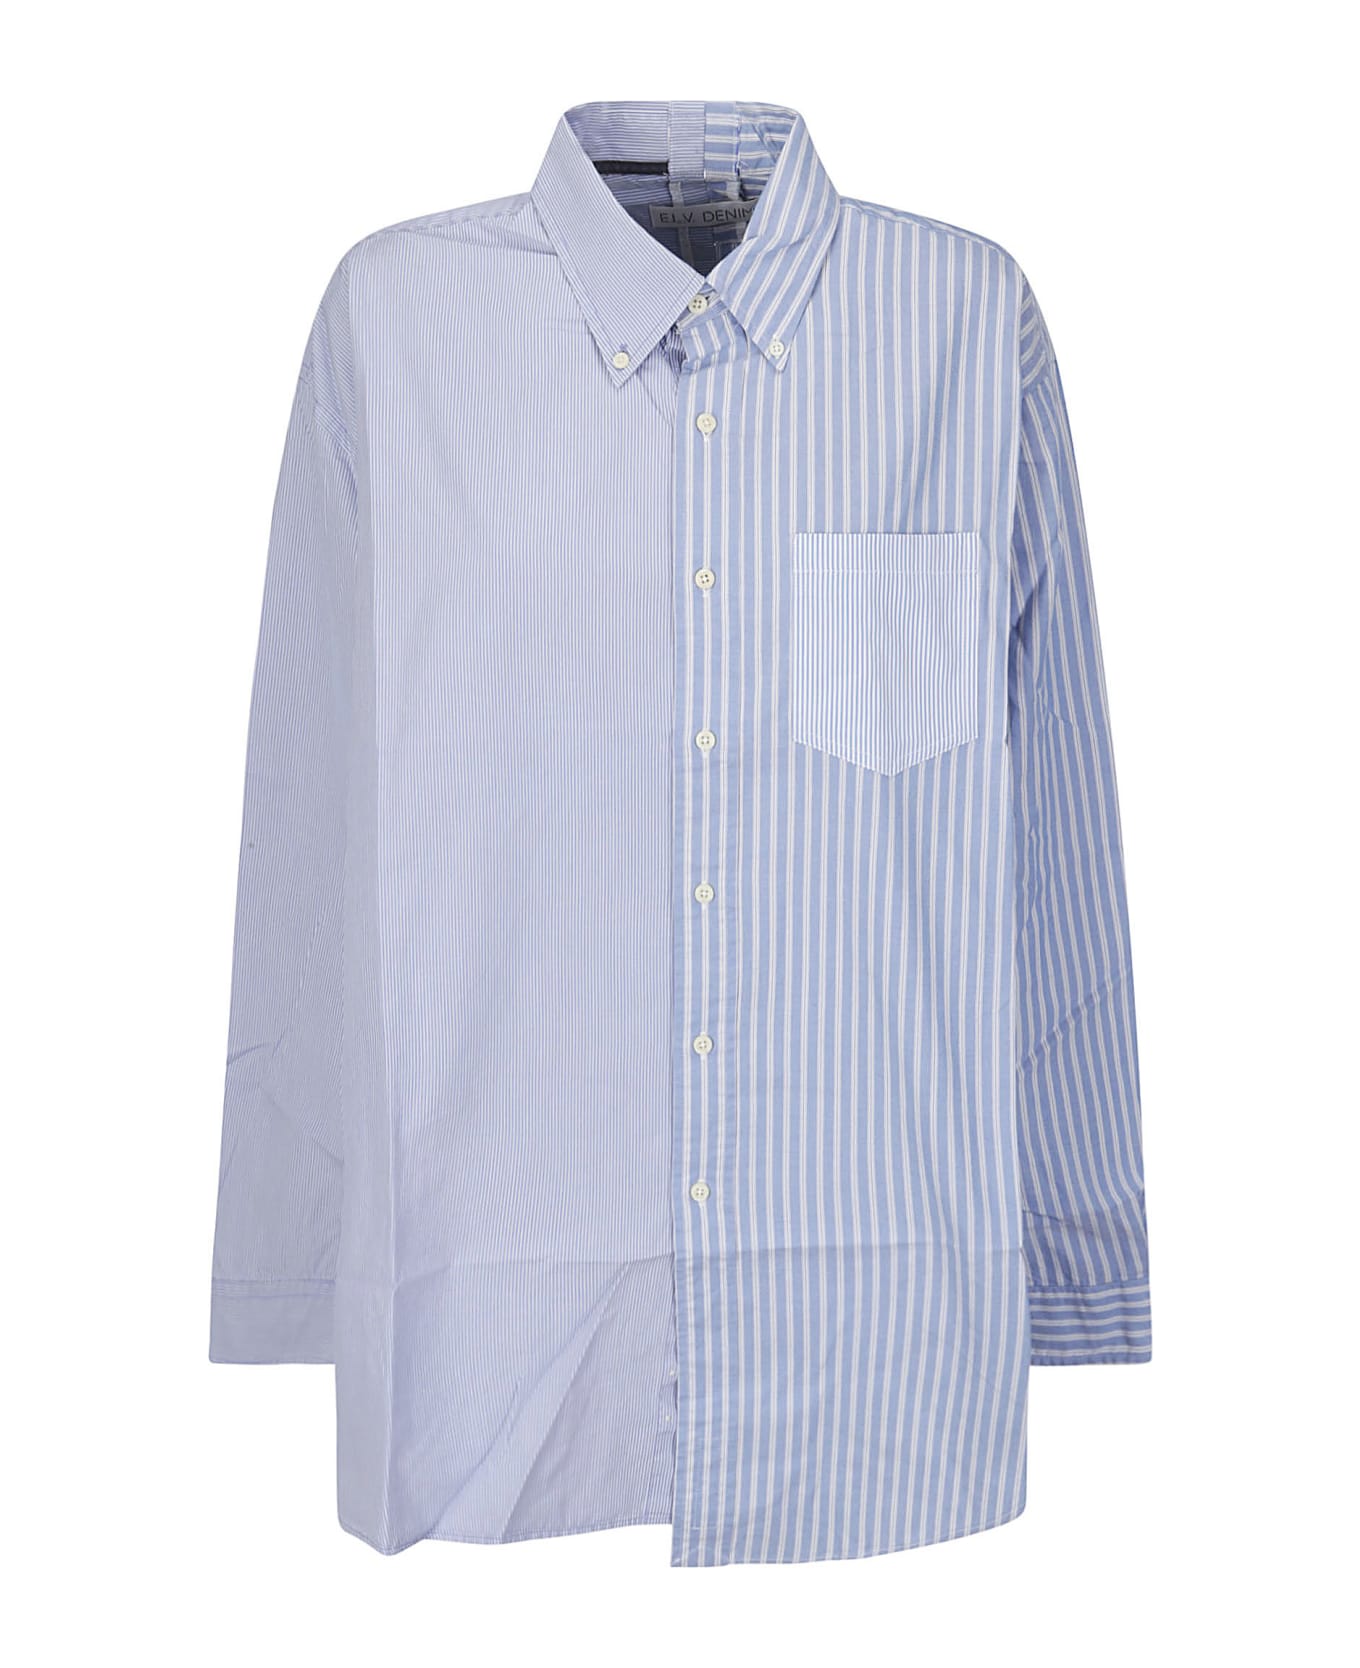 E.L.V. DENIM Diana Shirt - MULTI BLUE/WHITE